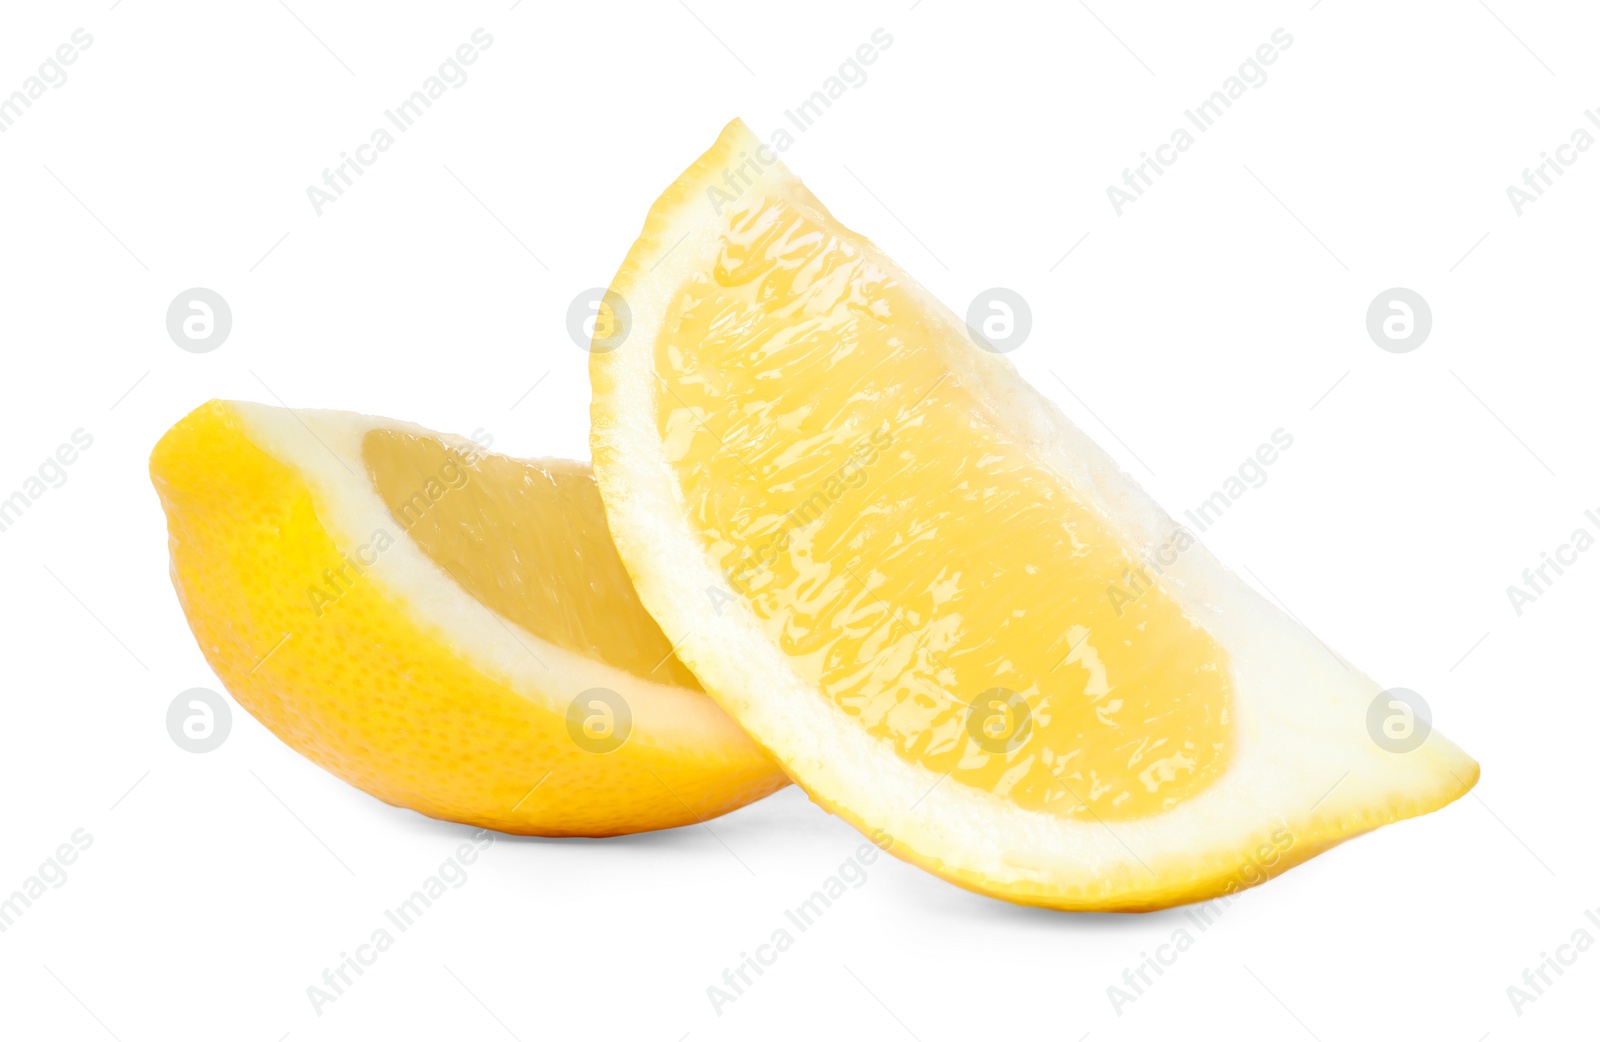 Photo of Fresh ripe lemon slices on white background